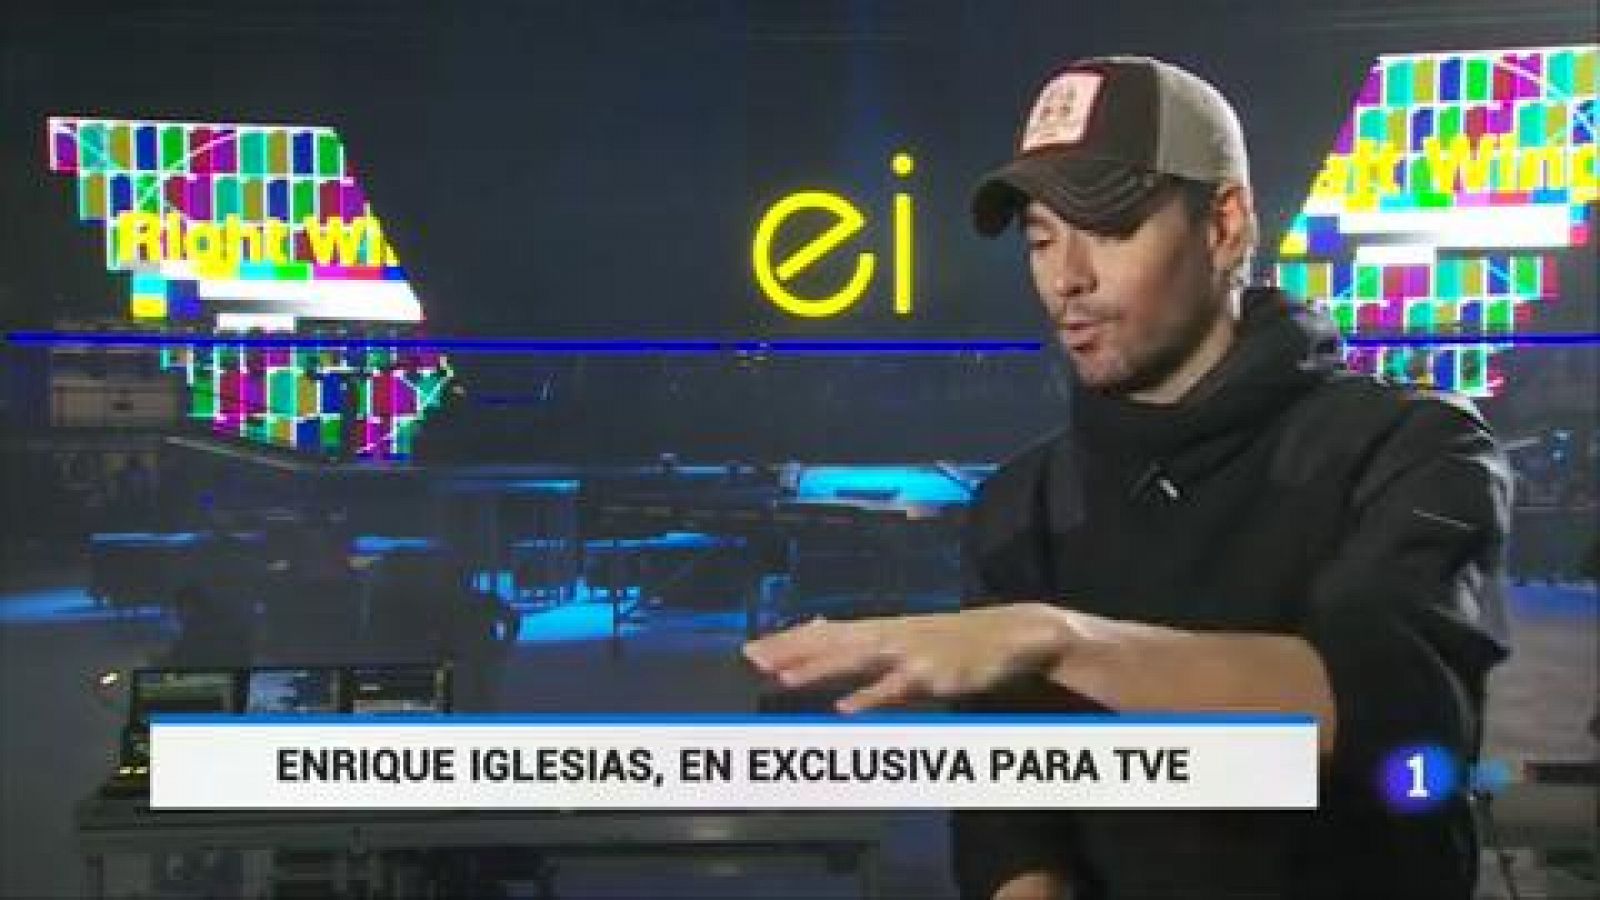 Enrique Iglesias: "Cada vez que subo al escenario pienso que puede ser el último concierto y lo doy todo"